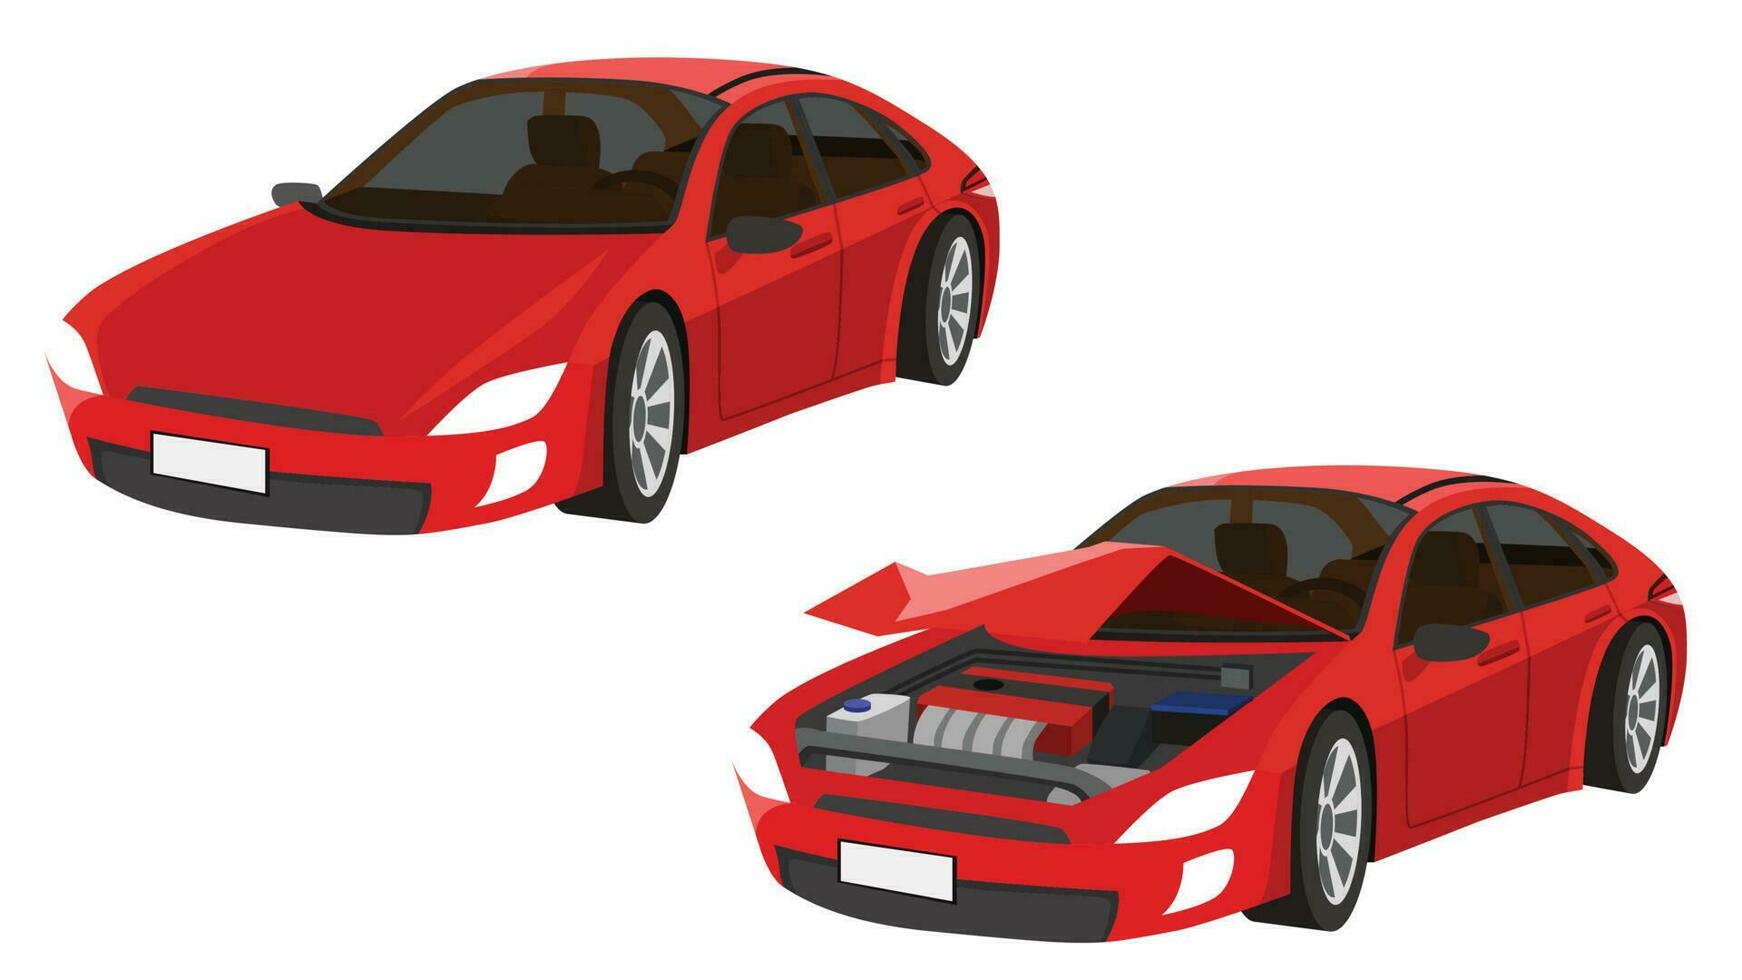 dibujos animados vector o ilustración isomático estado de el rojo deporte coche desde normal coche a el coche estaba ligeramente dañado. severamente dañado frente roto abierto capucha.